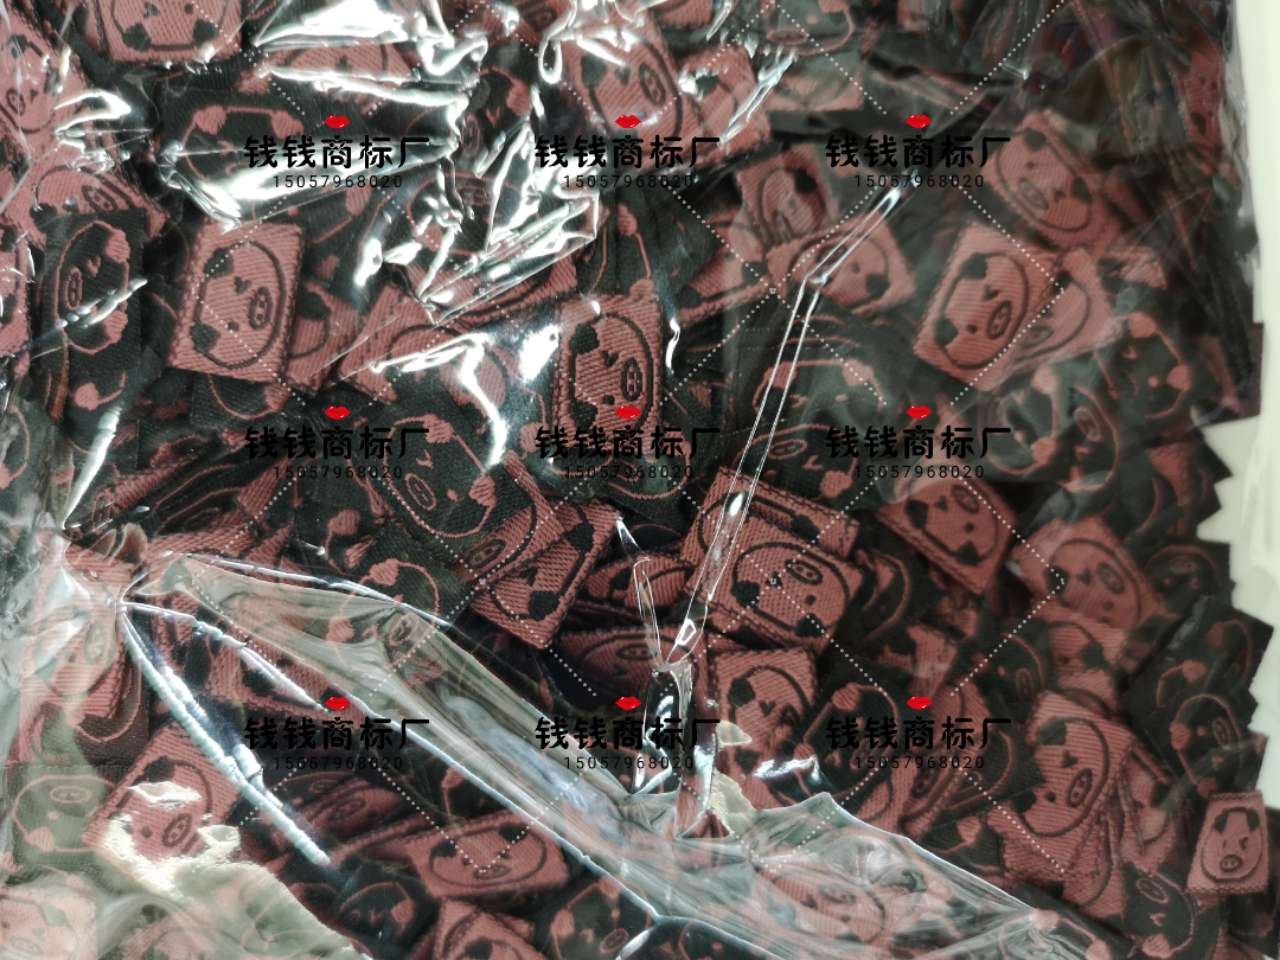 黑底粉色猪猪DIY 标签韩国韩版手工制作布标布贴商标织唛DIY发饰材料配件图